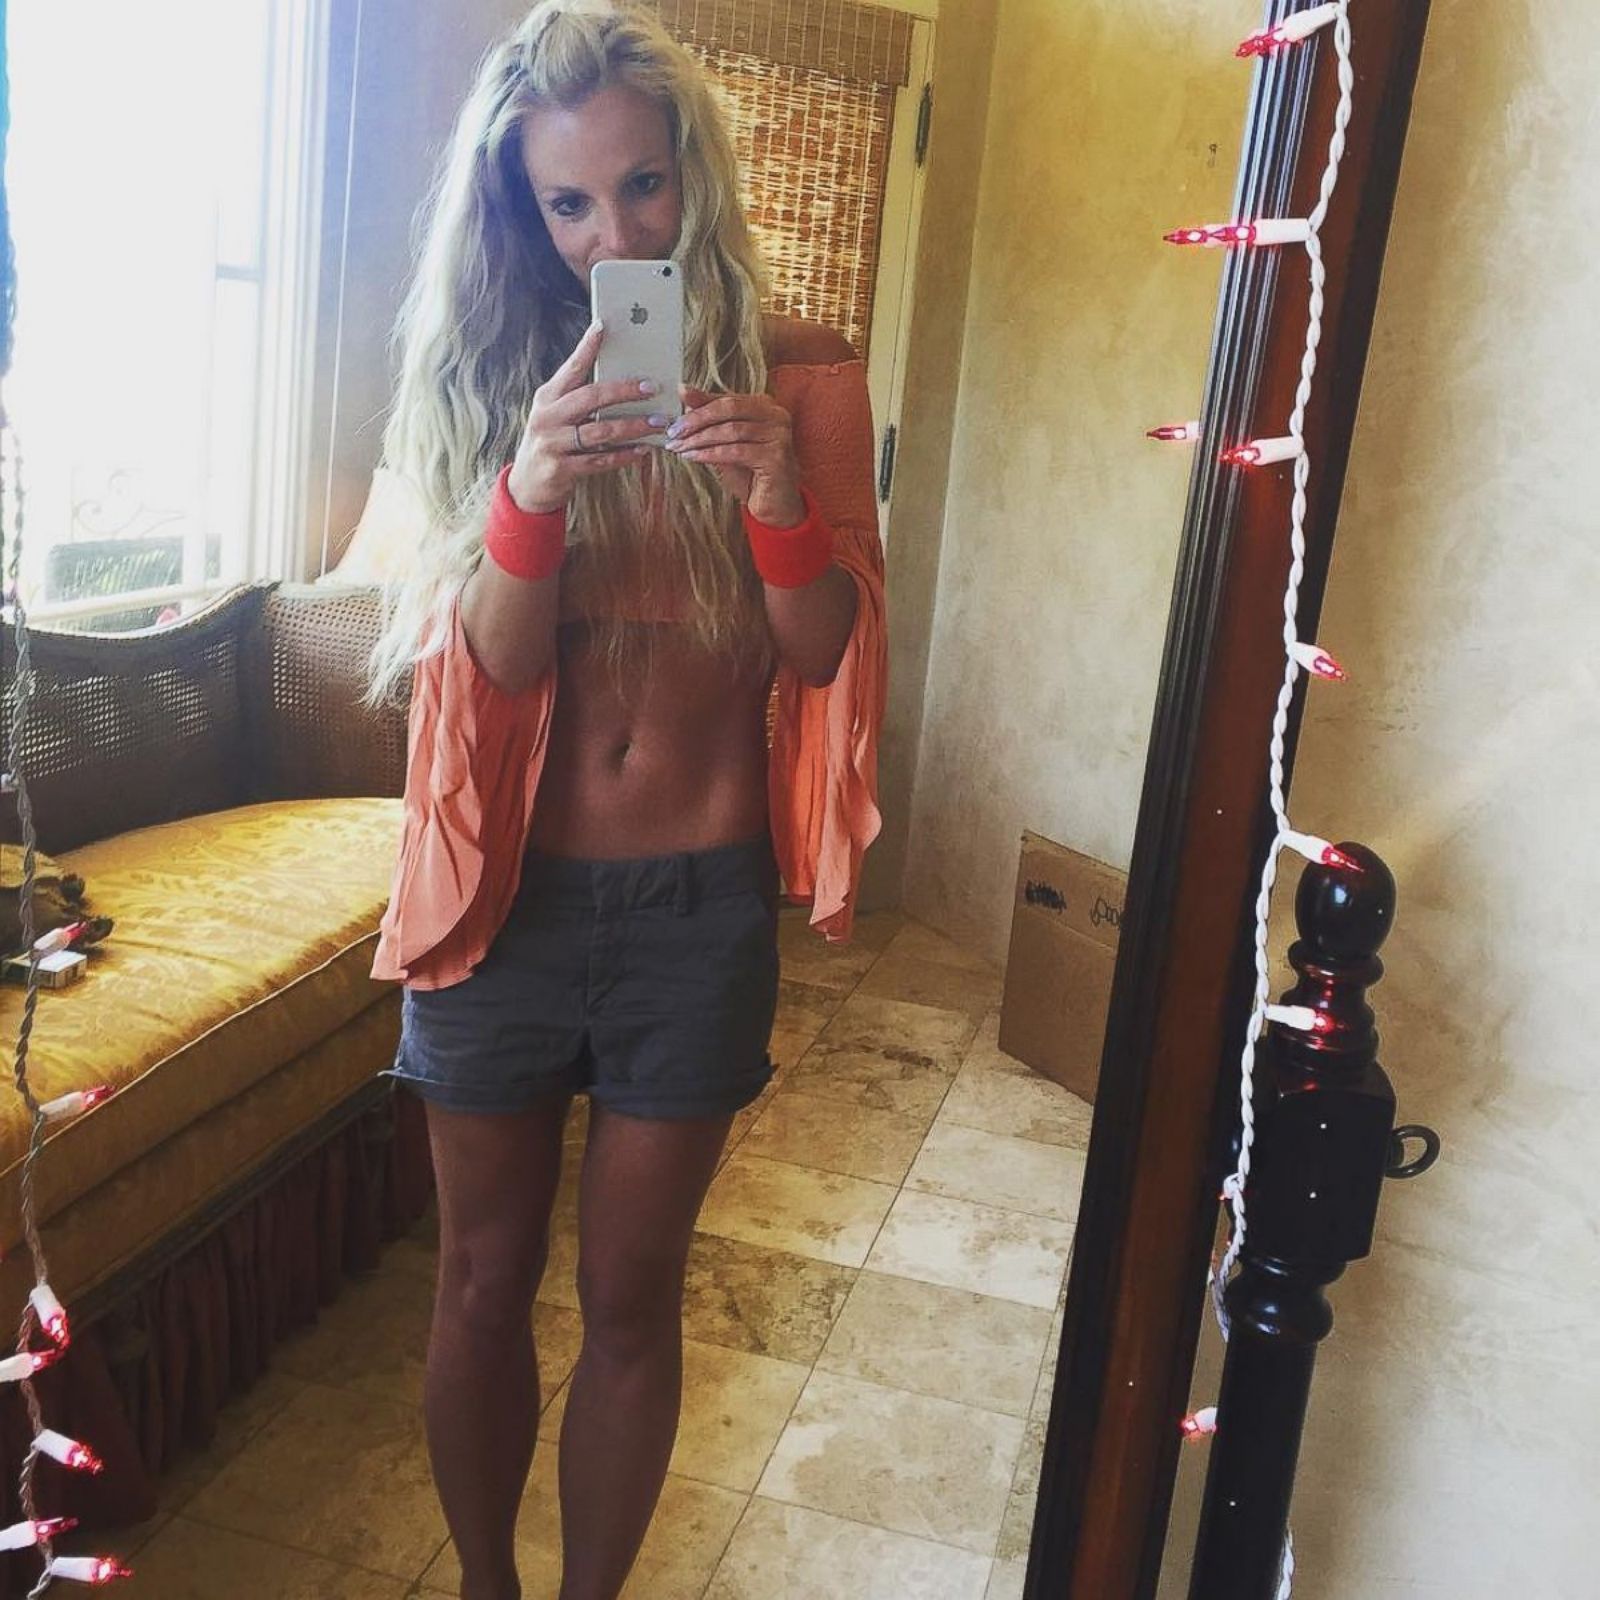 Best Britney Spears Shows Off Her Sexy Bikini Body (17